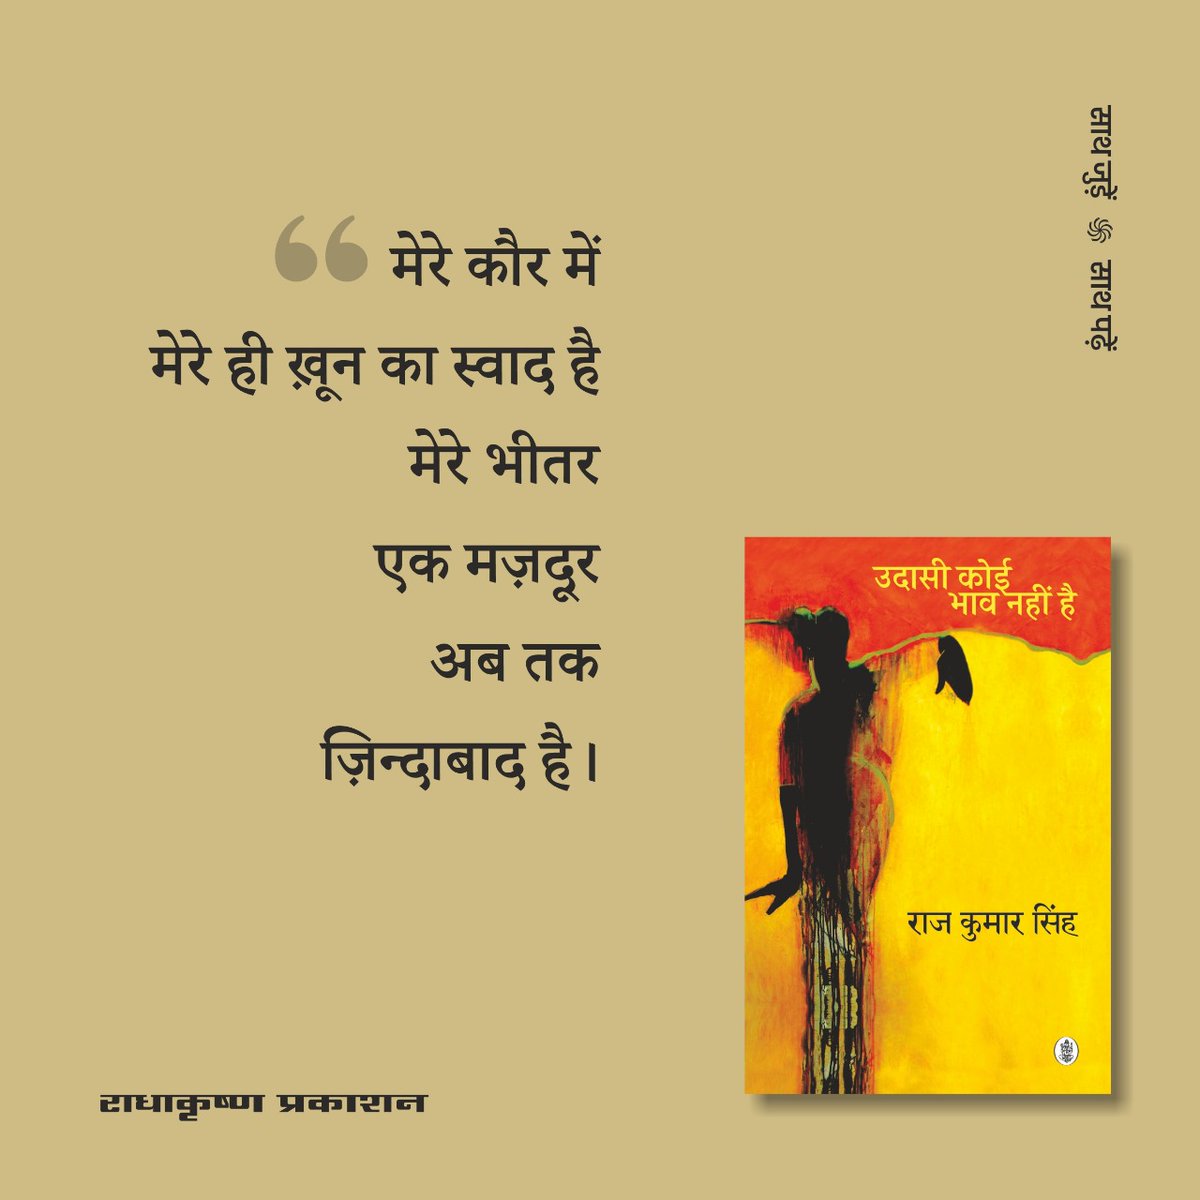 मेरे कौर में मेरे ही ख़ून का स्वाद है मेरे भीतर एक मज़दूर अब तक ज़िंदाबाद है। -राज कुमार सिंह / 'उदासी कोई भाव नहीं है' कविता संग्रह से @rajkumarspeaks #नईआमद #मज़दूरदिवस #Radhakrishnabooks